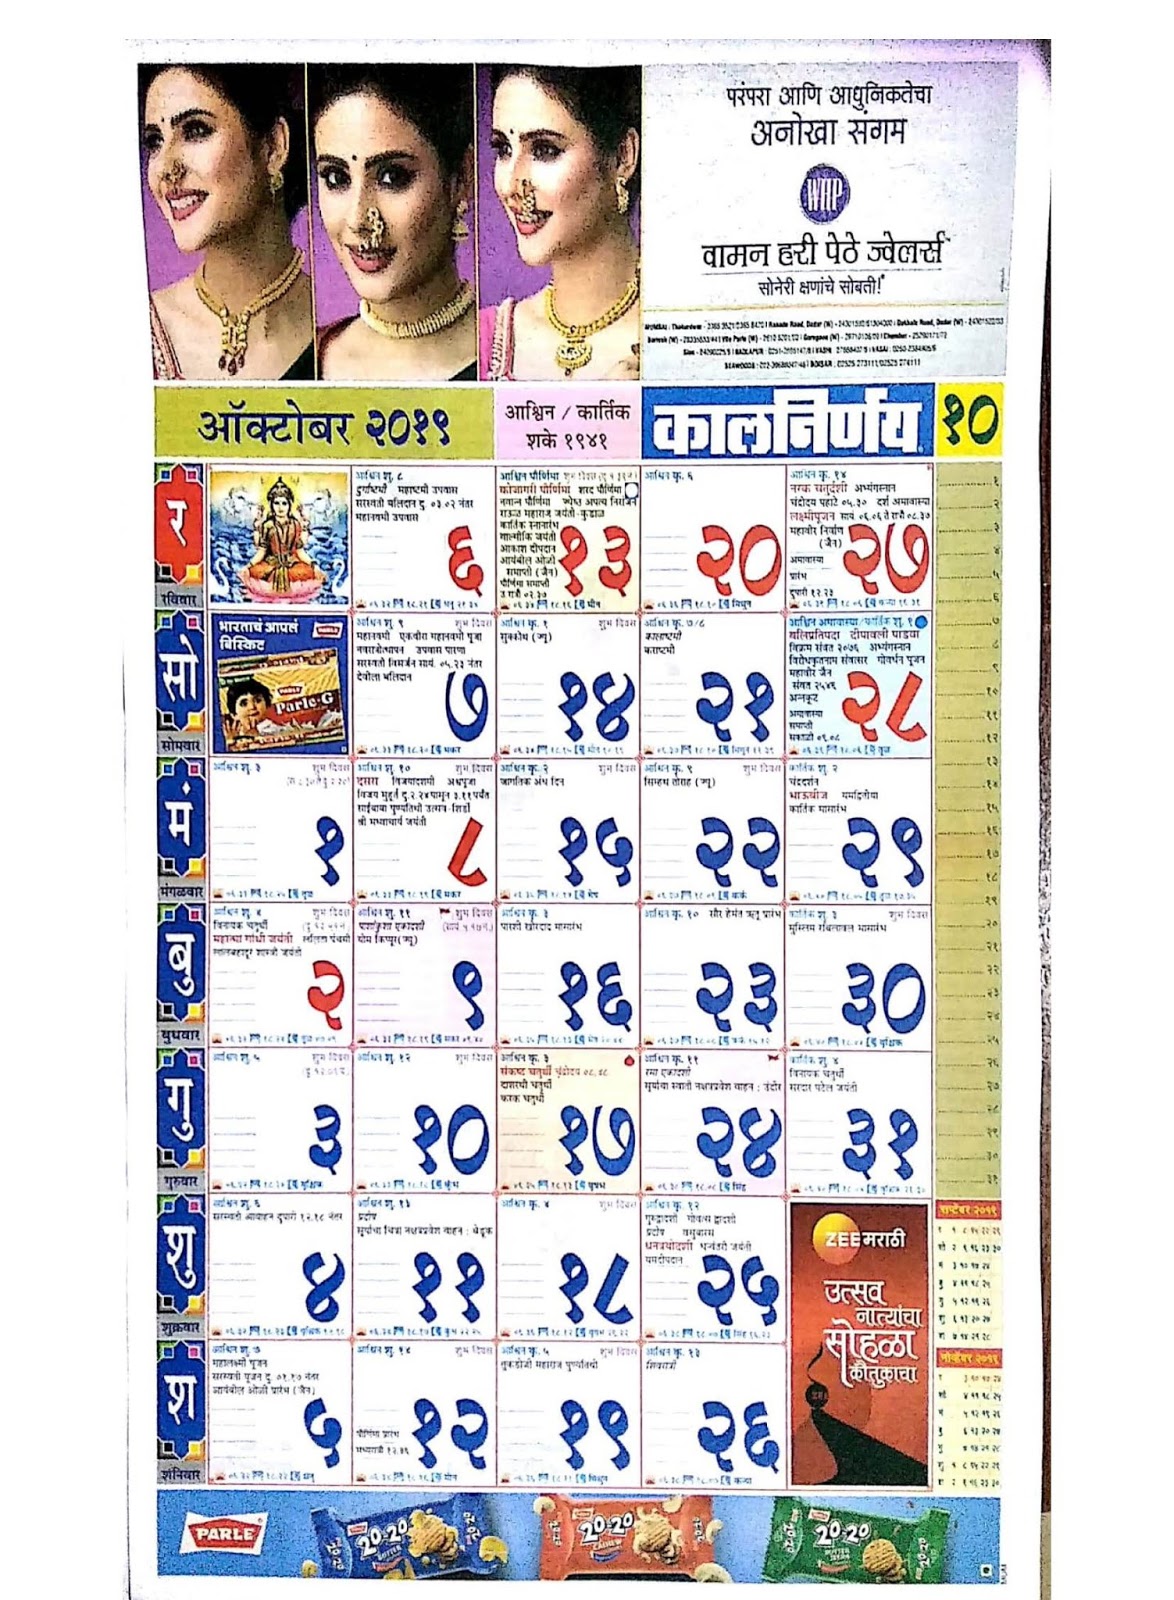 kalnirnay-marathi-calendar-2013-free-download-for-mobile-ratemybap